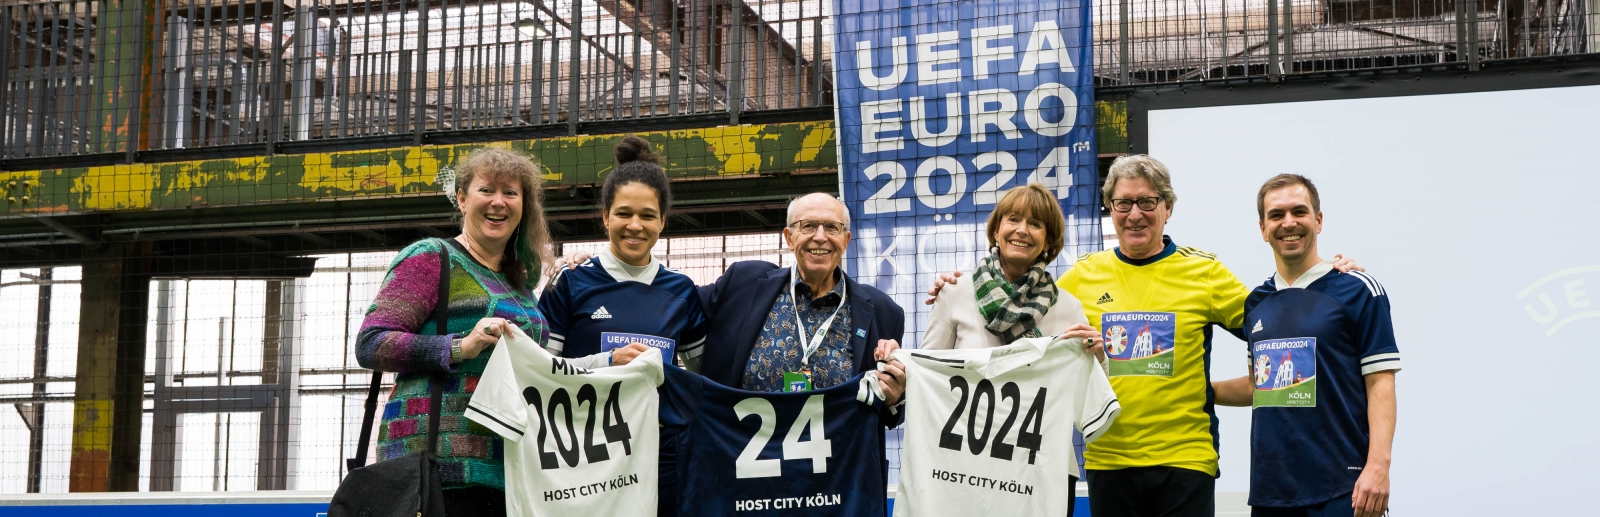 Kick-off Event in Köln zur EURO 2024. Andrea Milz, Philipp Lahm, Henriette Reker, Reiner Calmund, Toni Schumacher, Celia Sasic